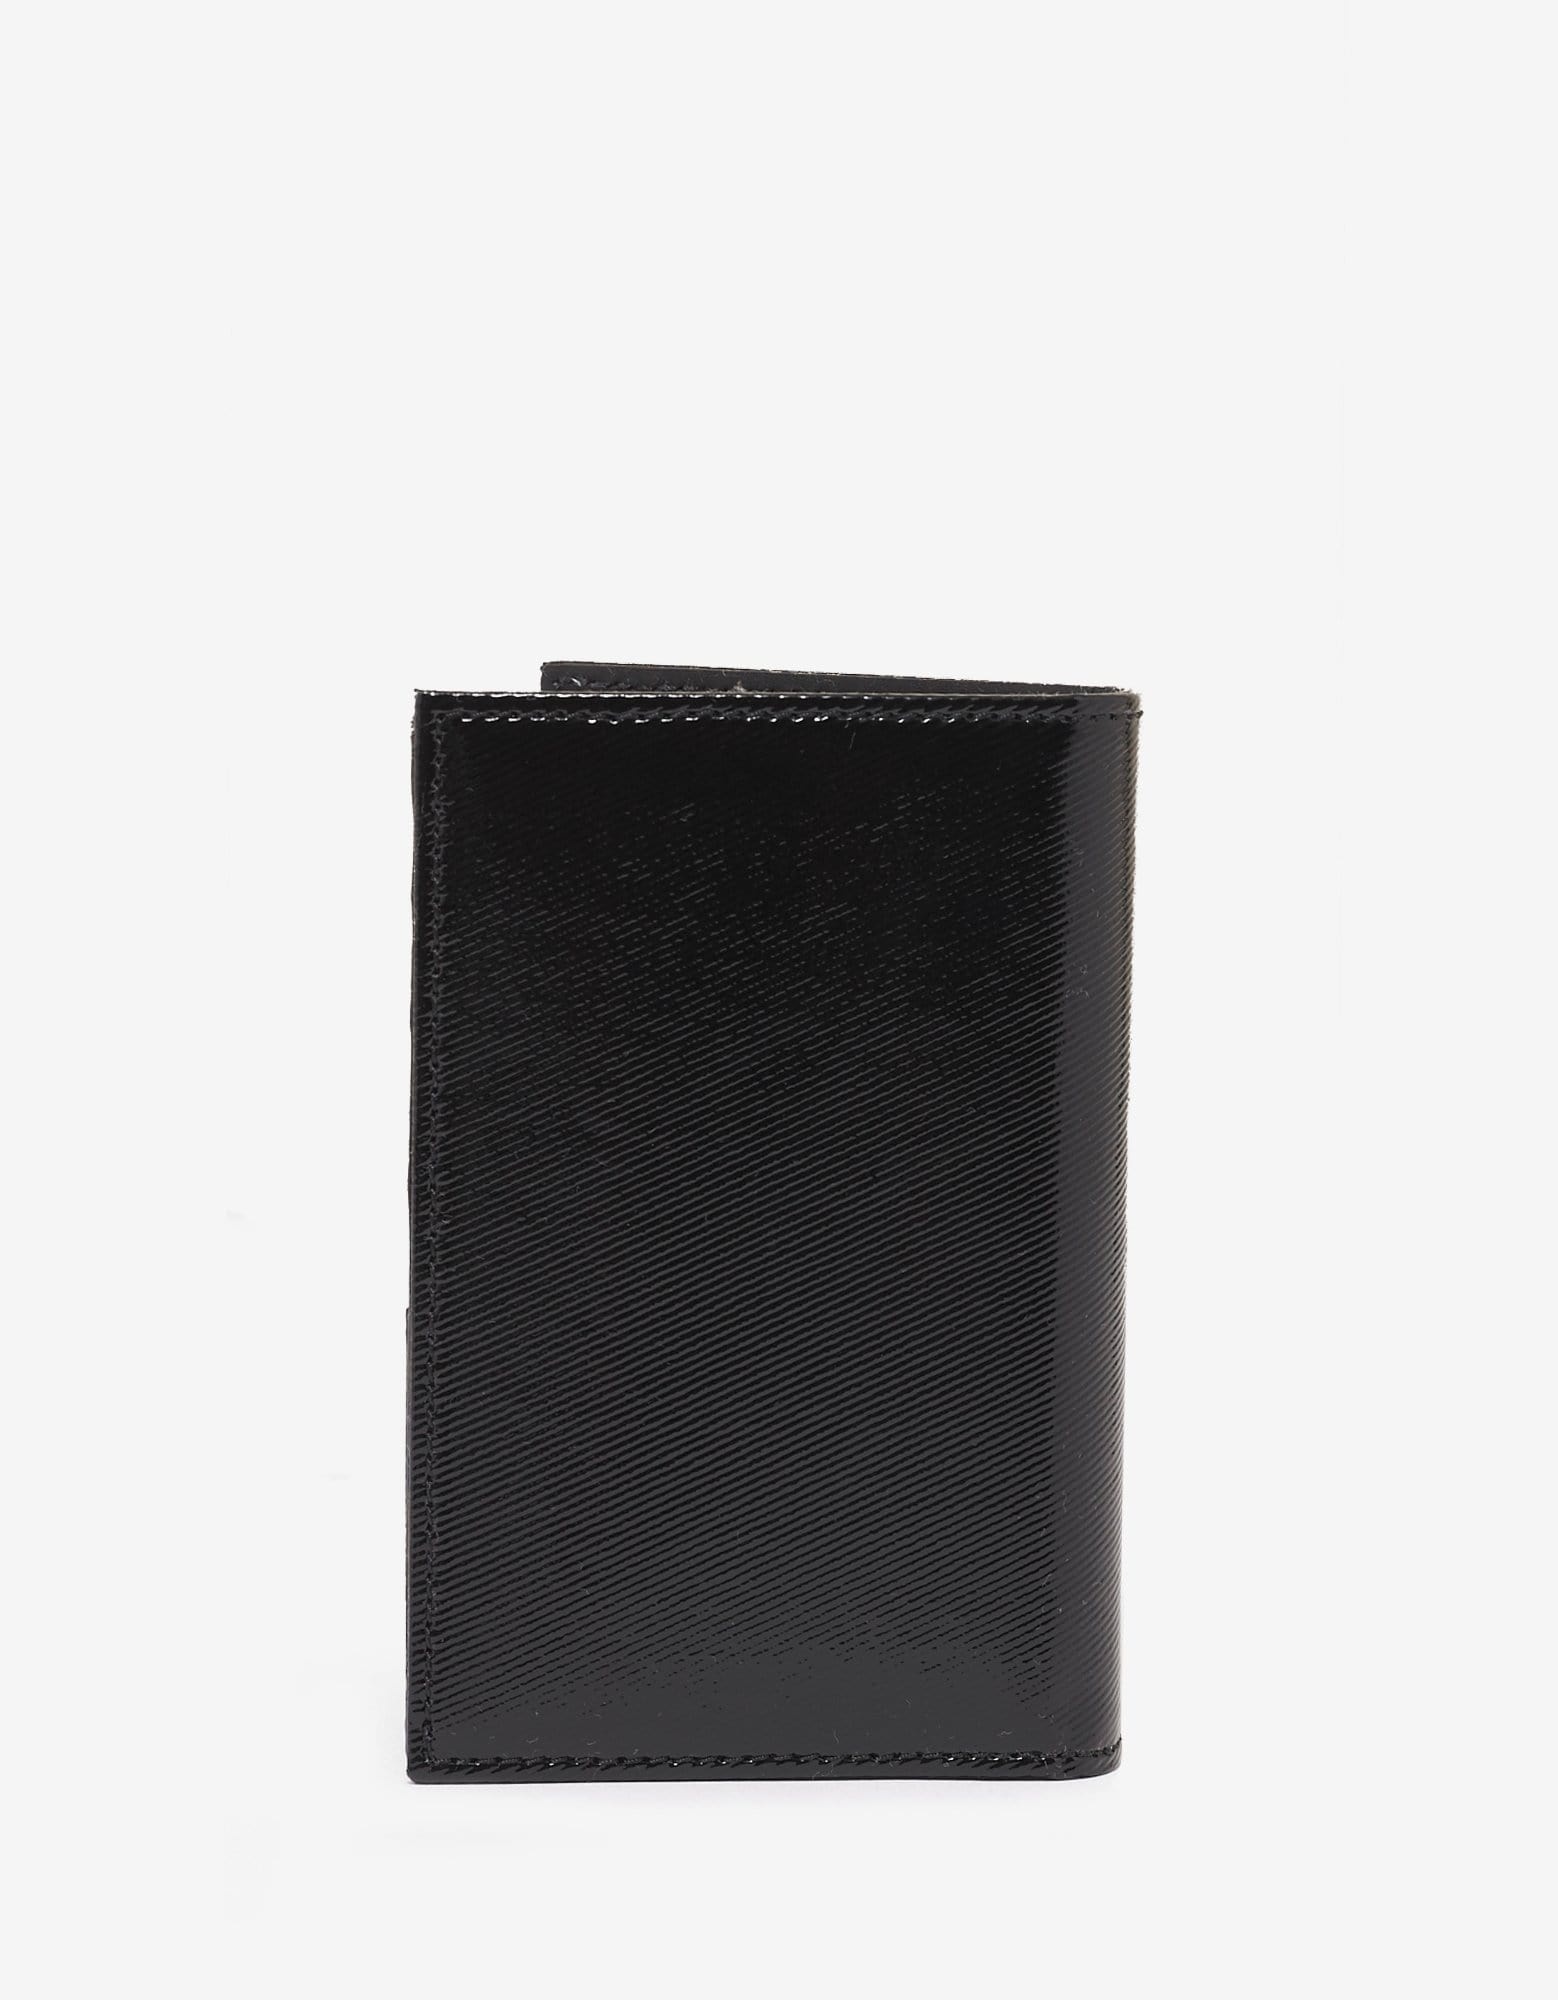 Black Patent Leather VLTN Card Wallet - 3